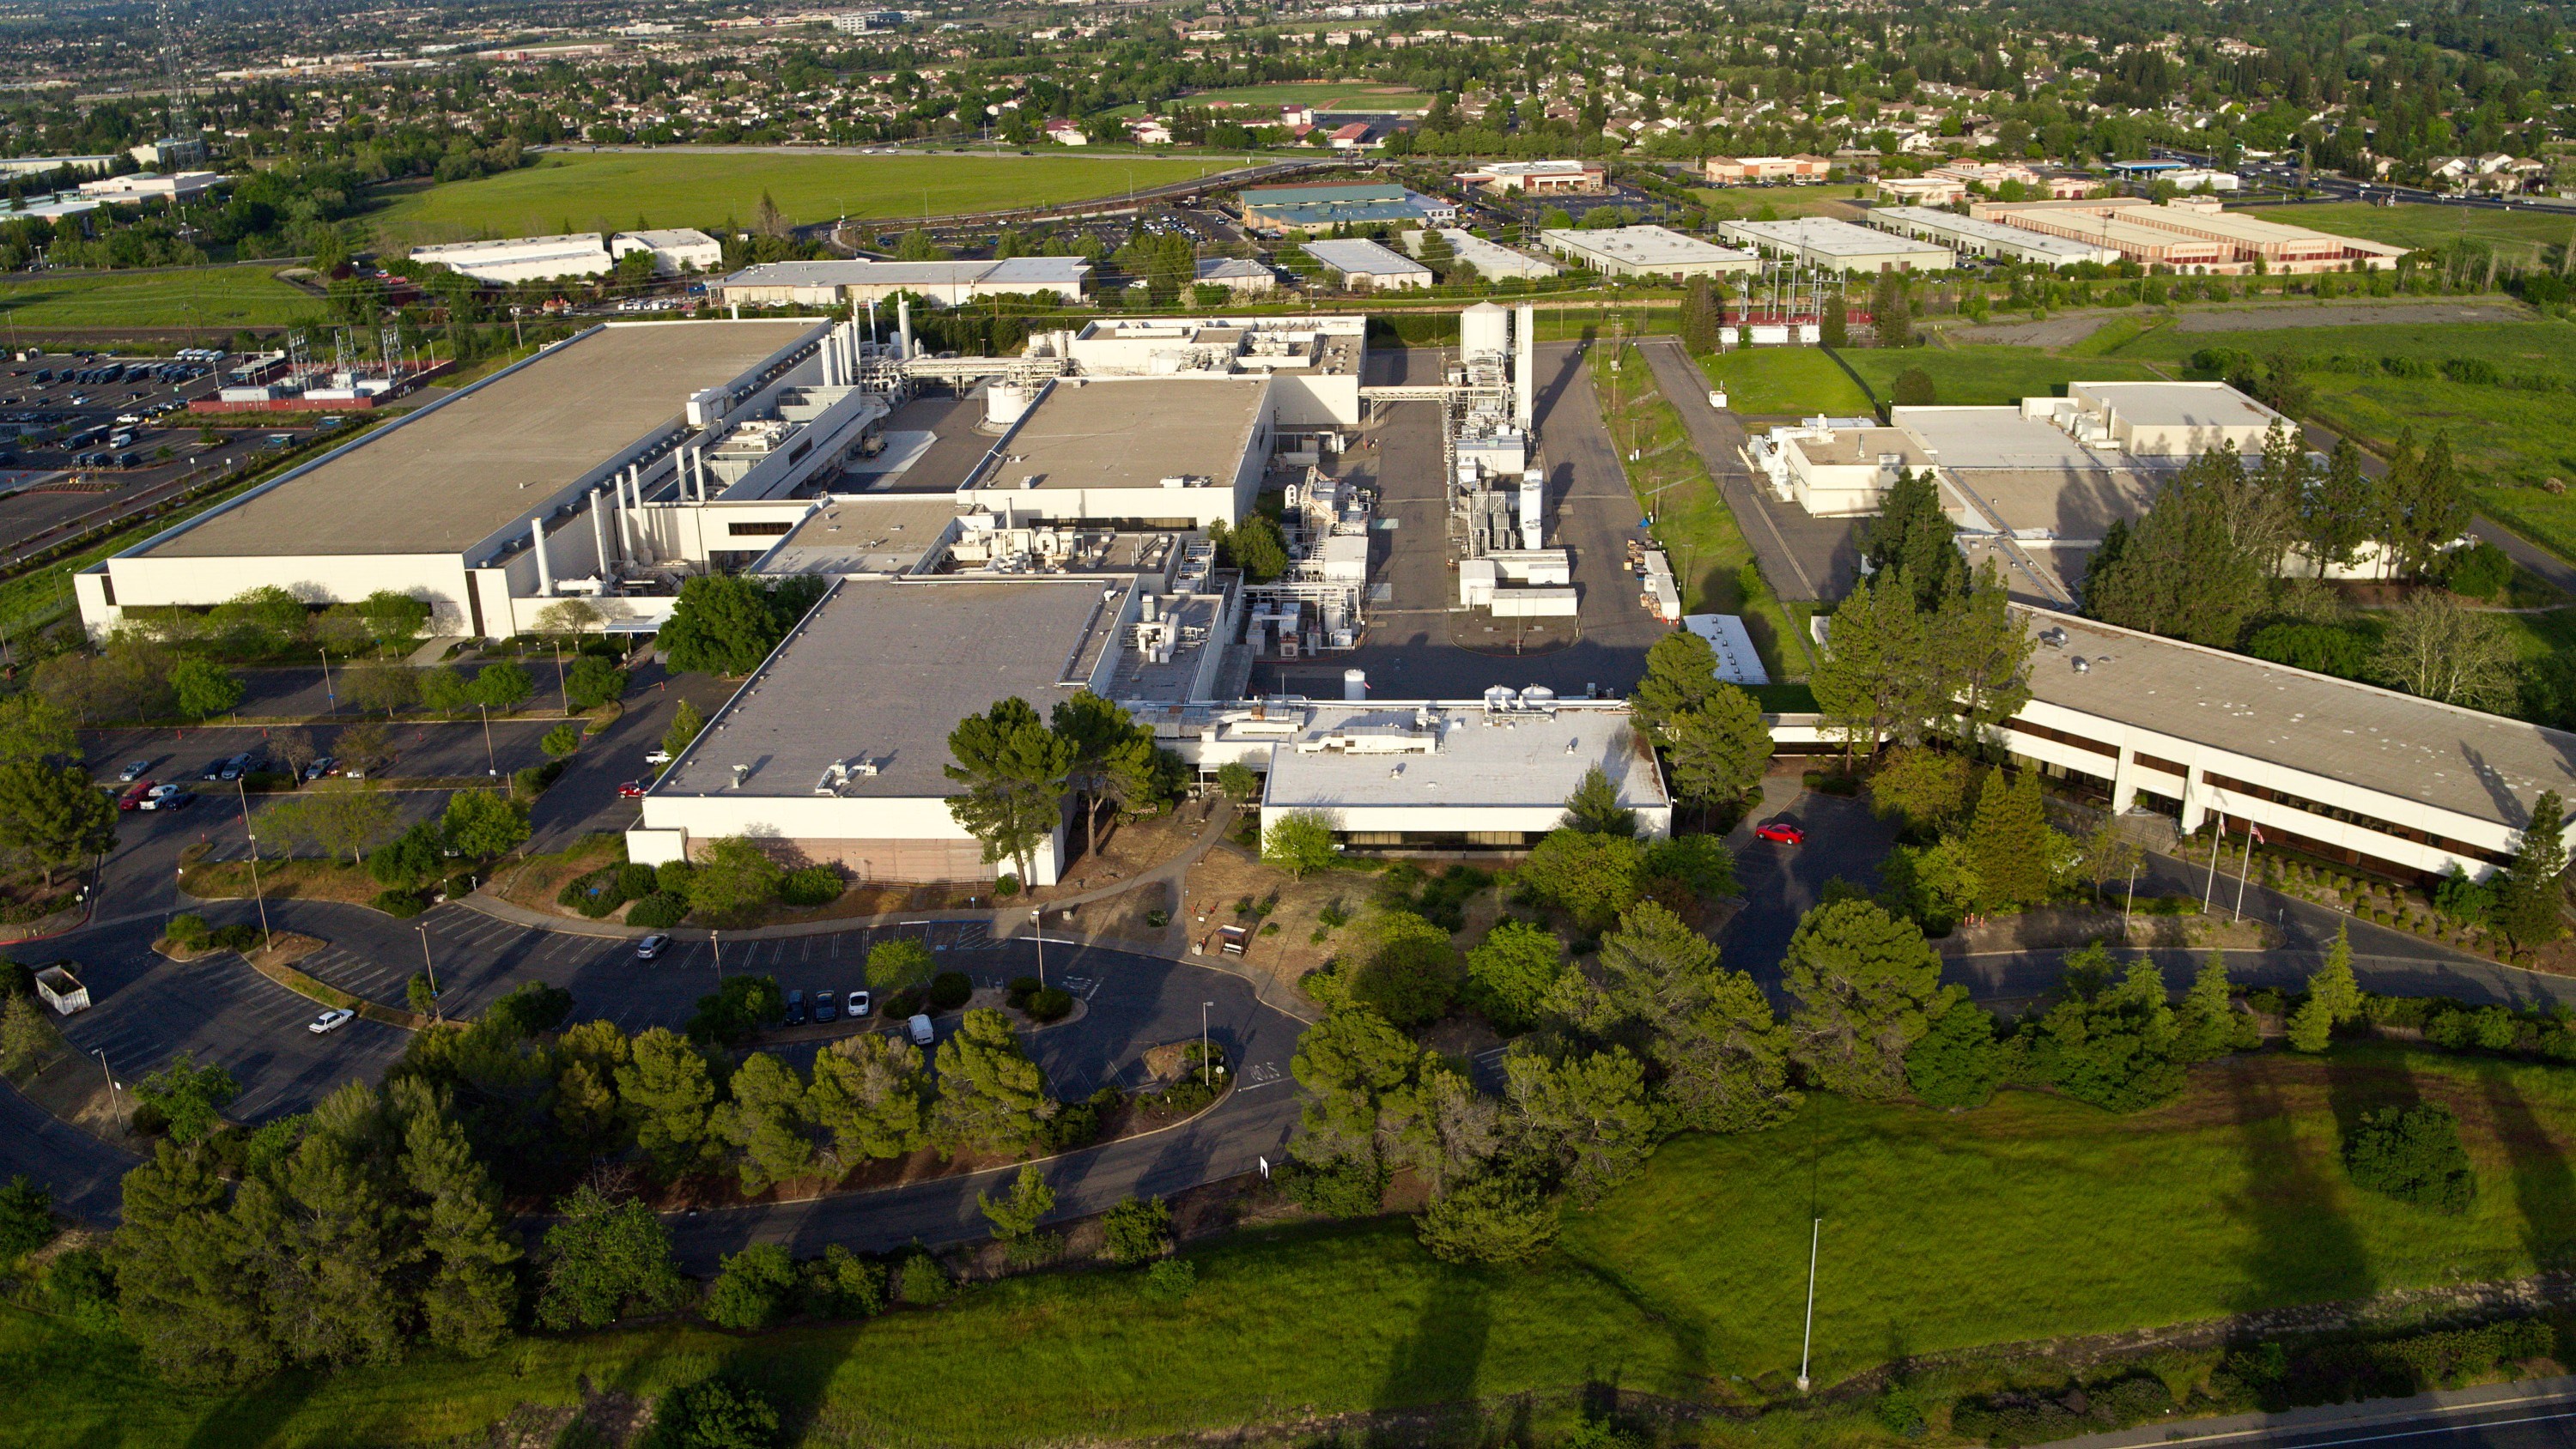 Bosch, ABD'li çip üreticisi TSI Semiconductors'ı satın alıyor